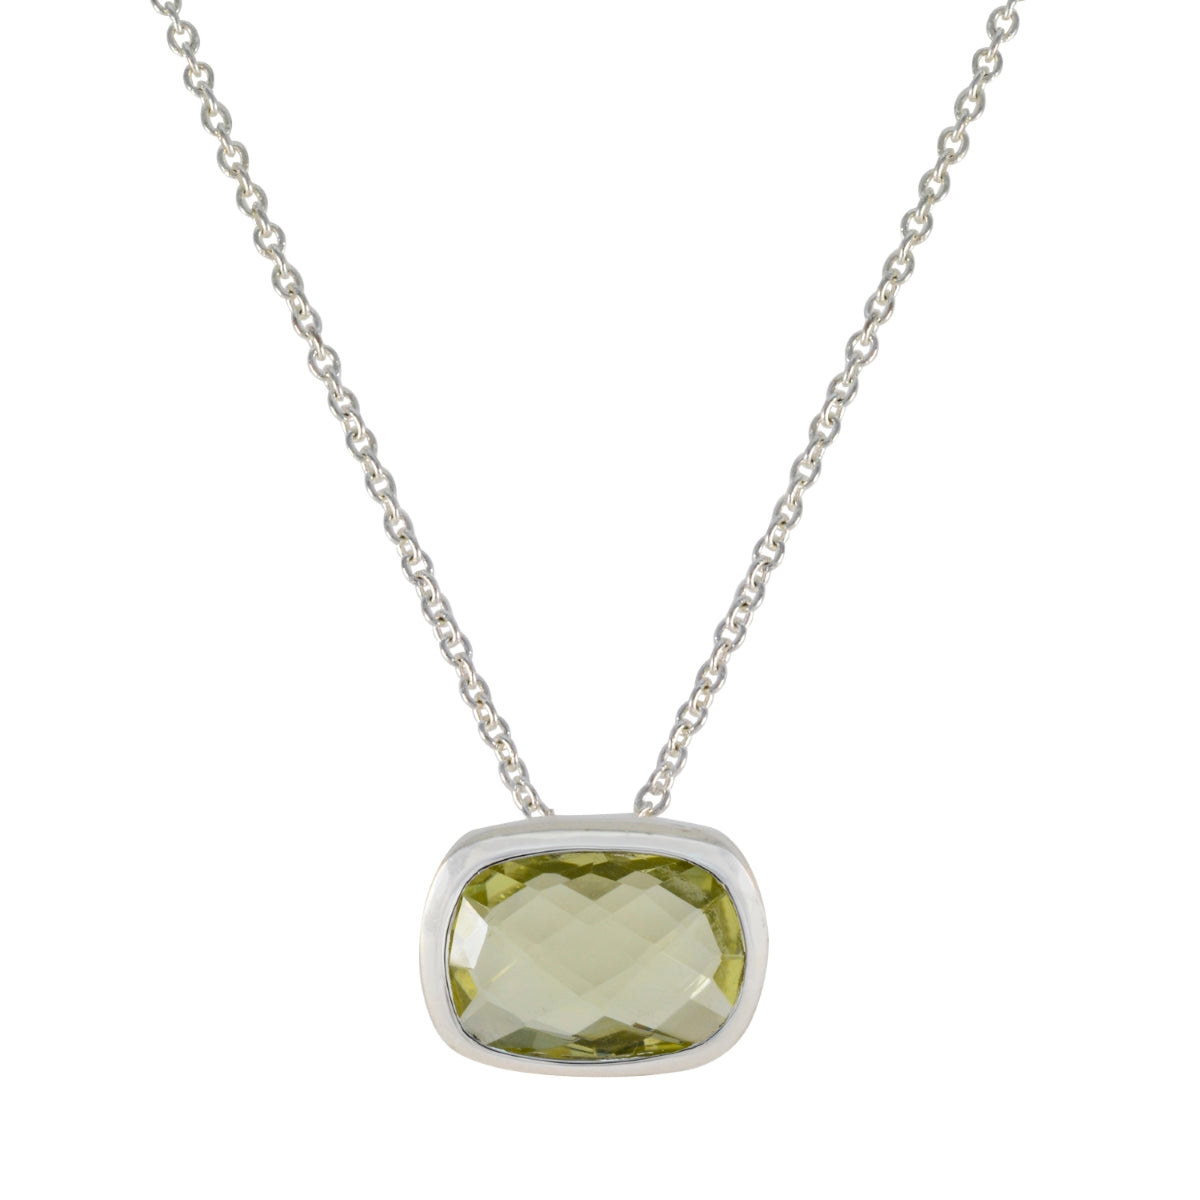 Riyo agréable pierre précieuse octogonale damier jaune citron quartz pendentif en argent sterling cadeau pour noël